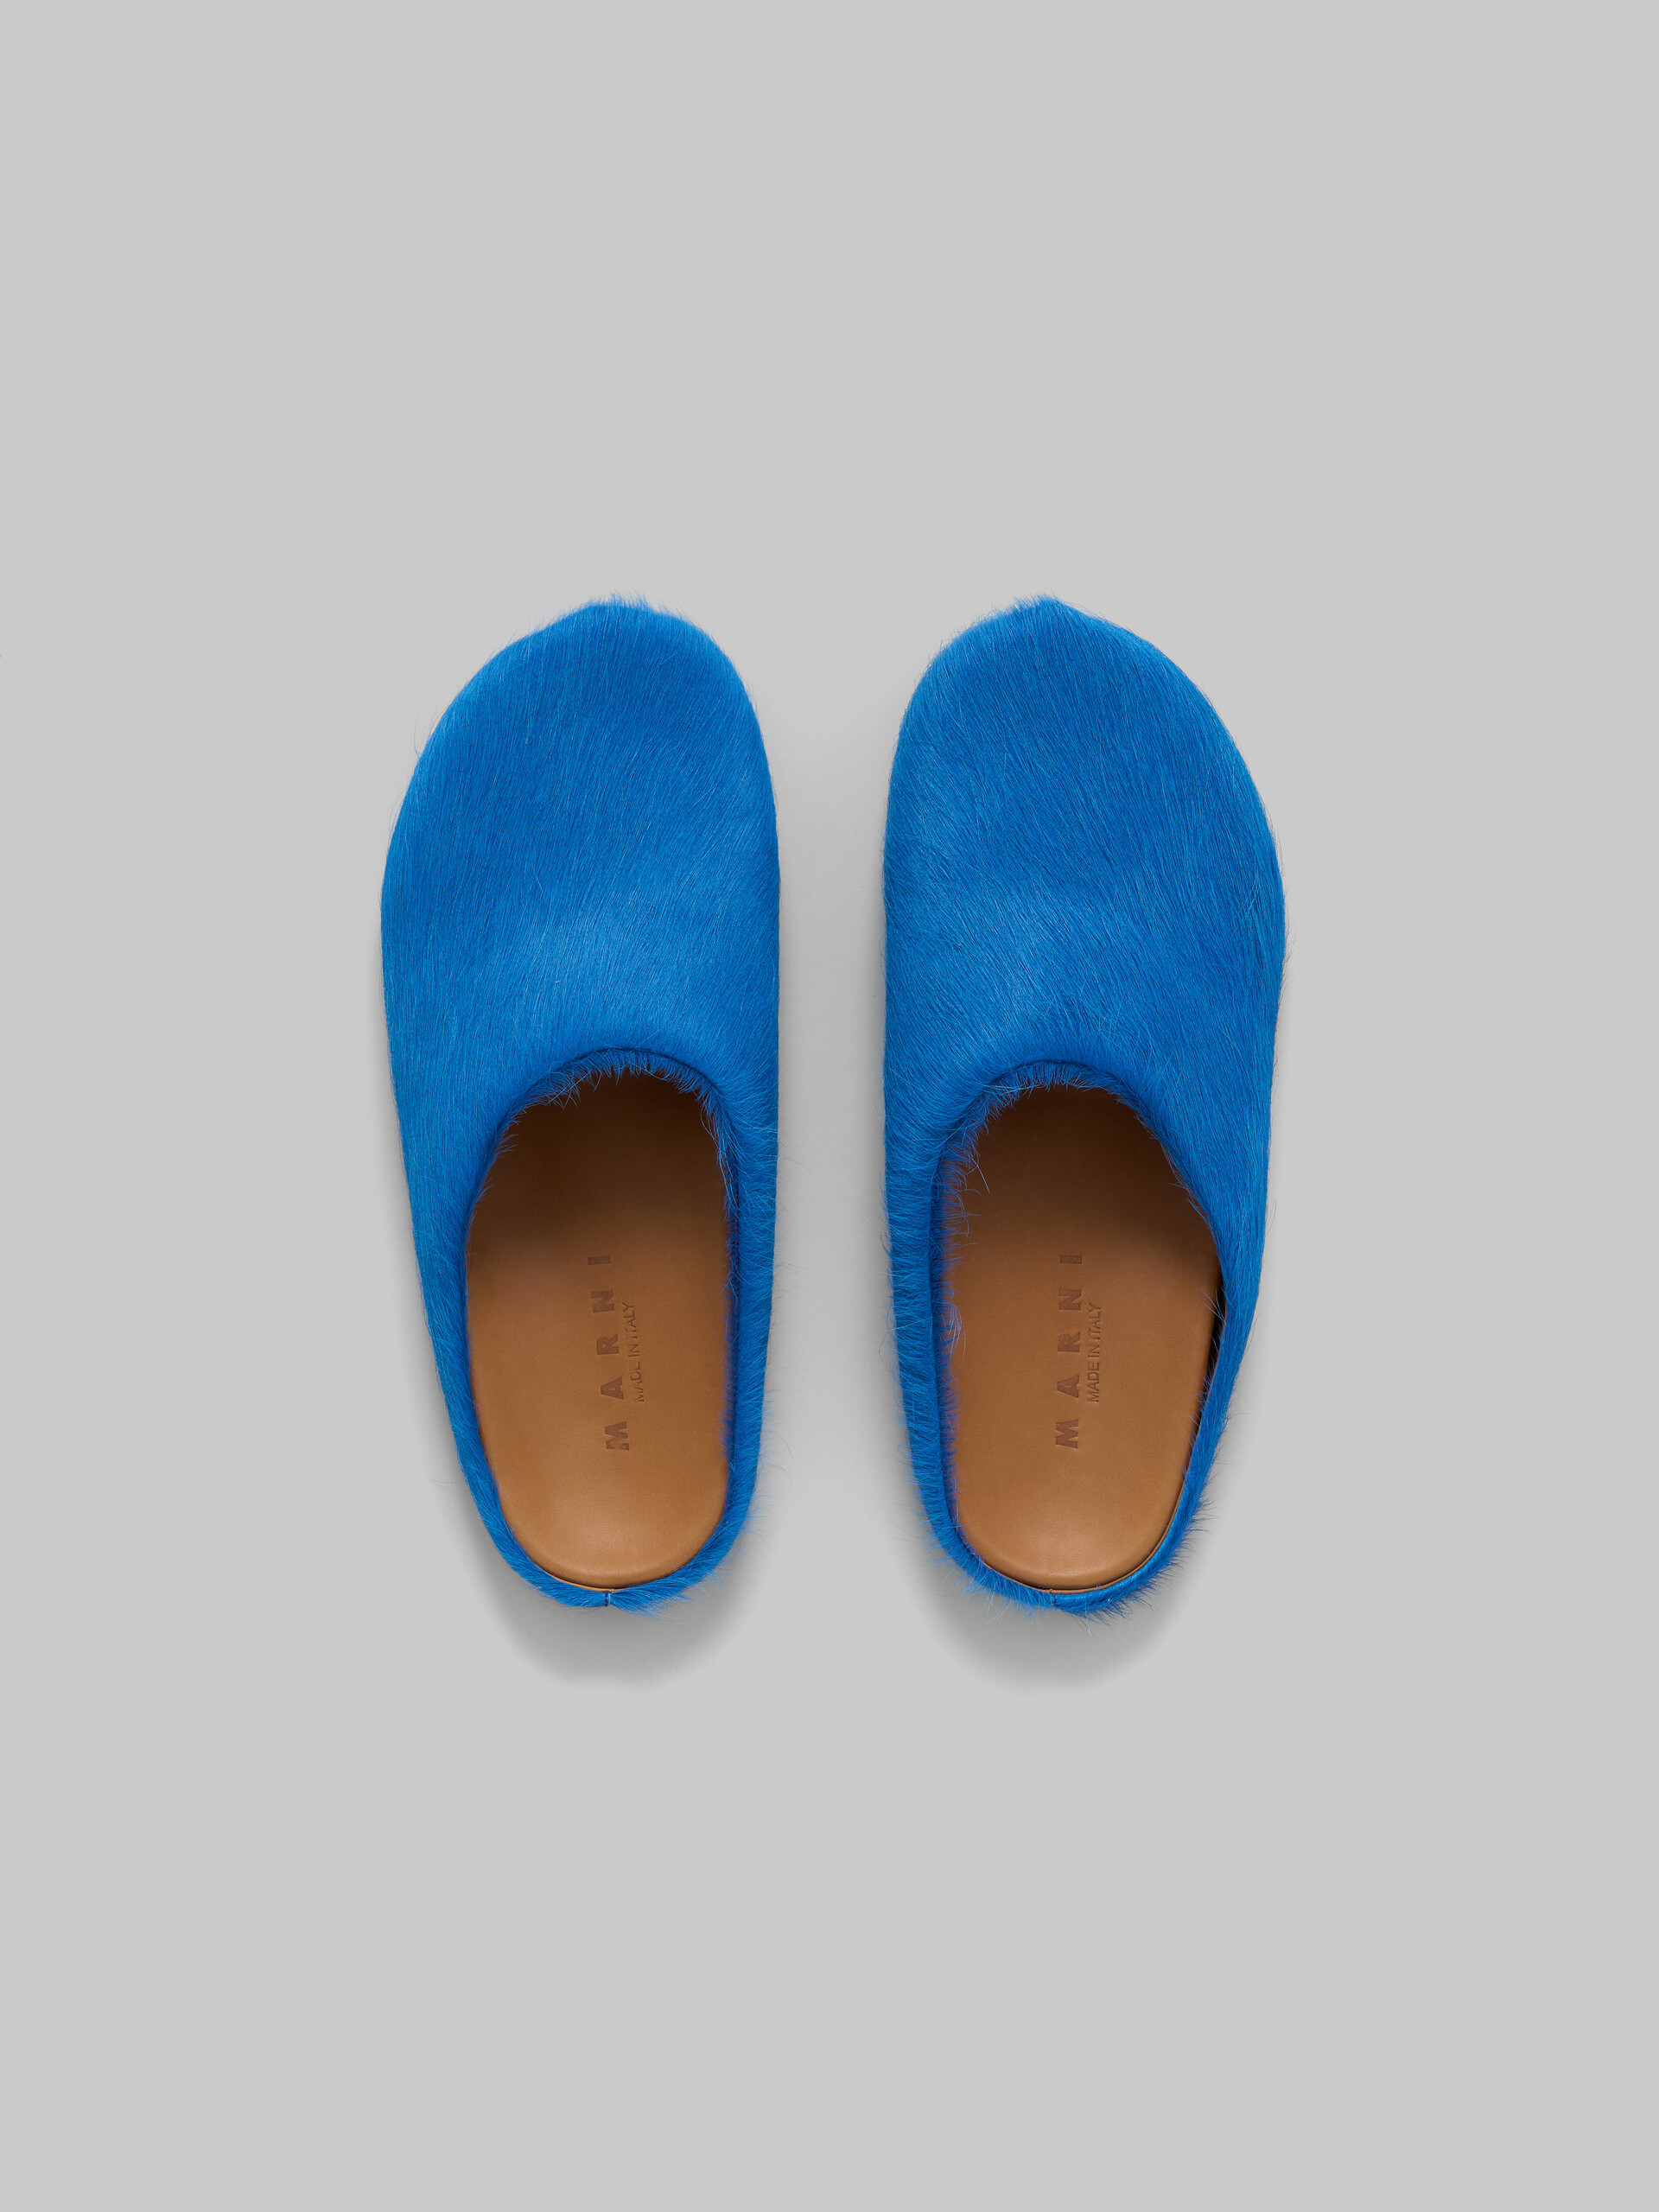 Hinten offener Loafer-Barfußschuh aus blauem Kalbsfell - Holzschuhe - Image 4